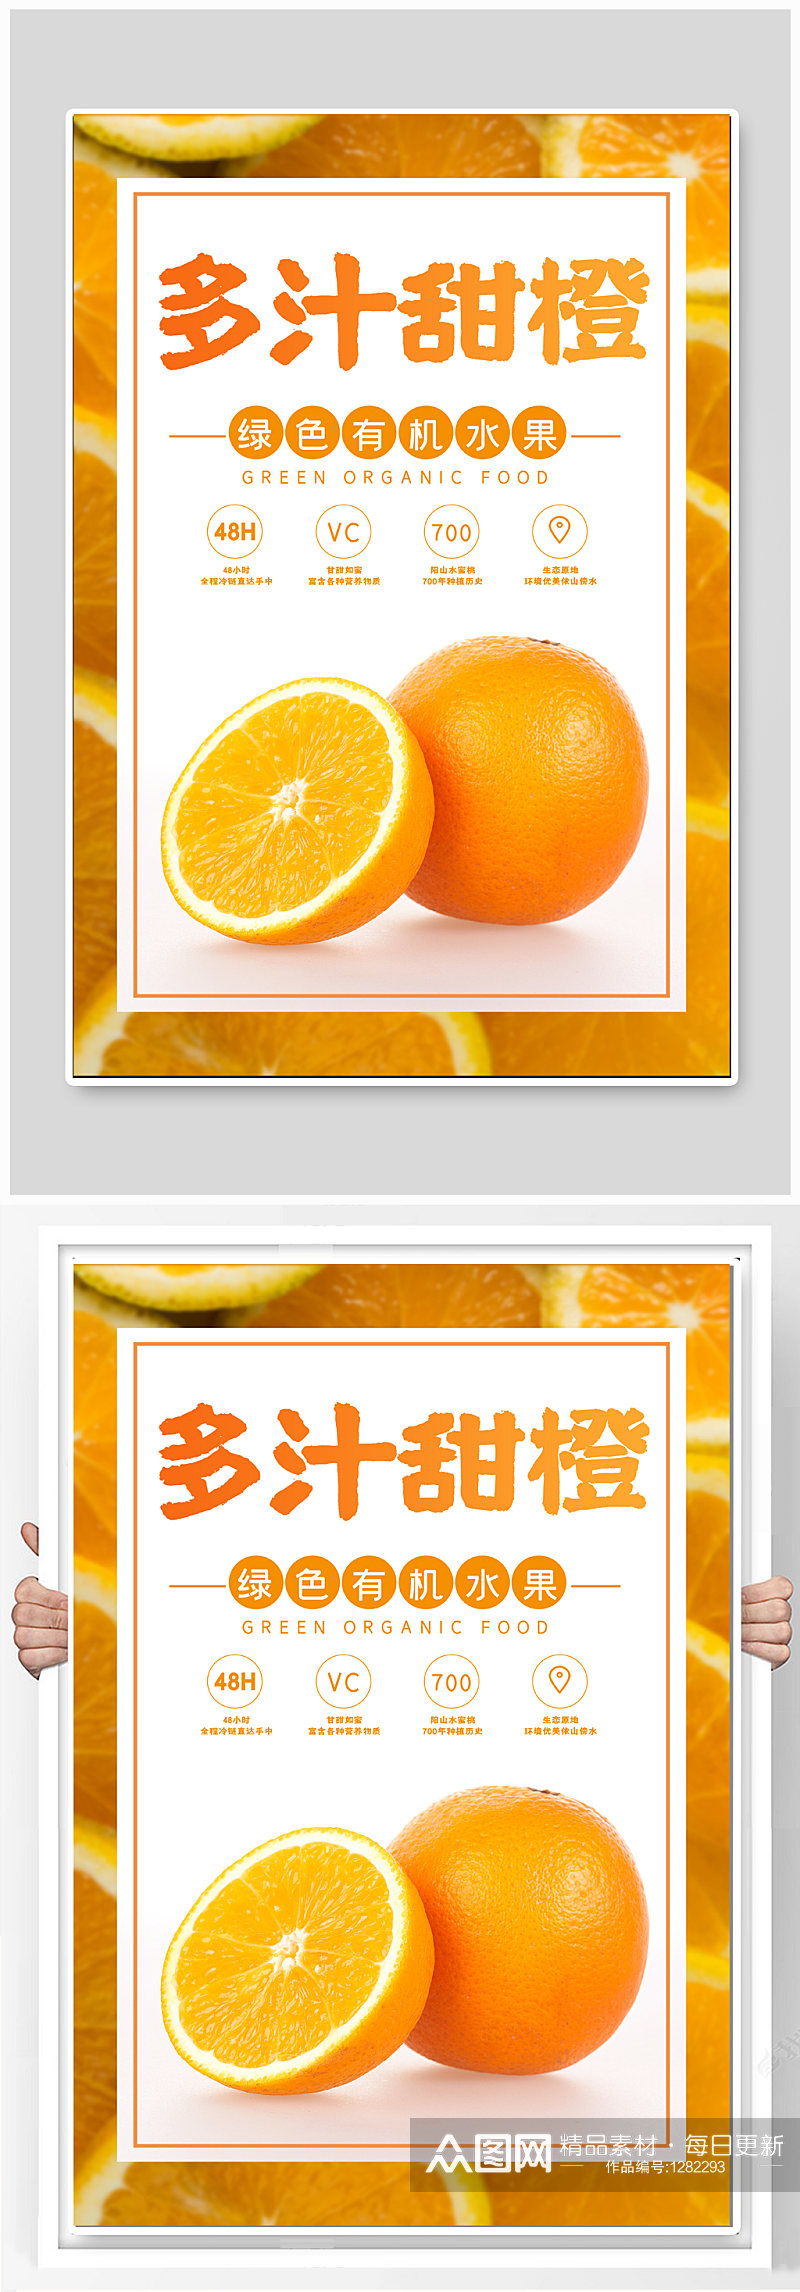 甜橙水果促销海报素材